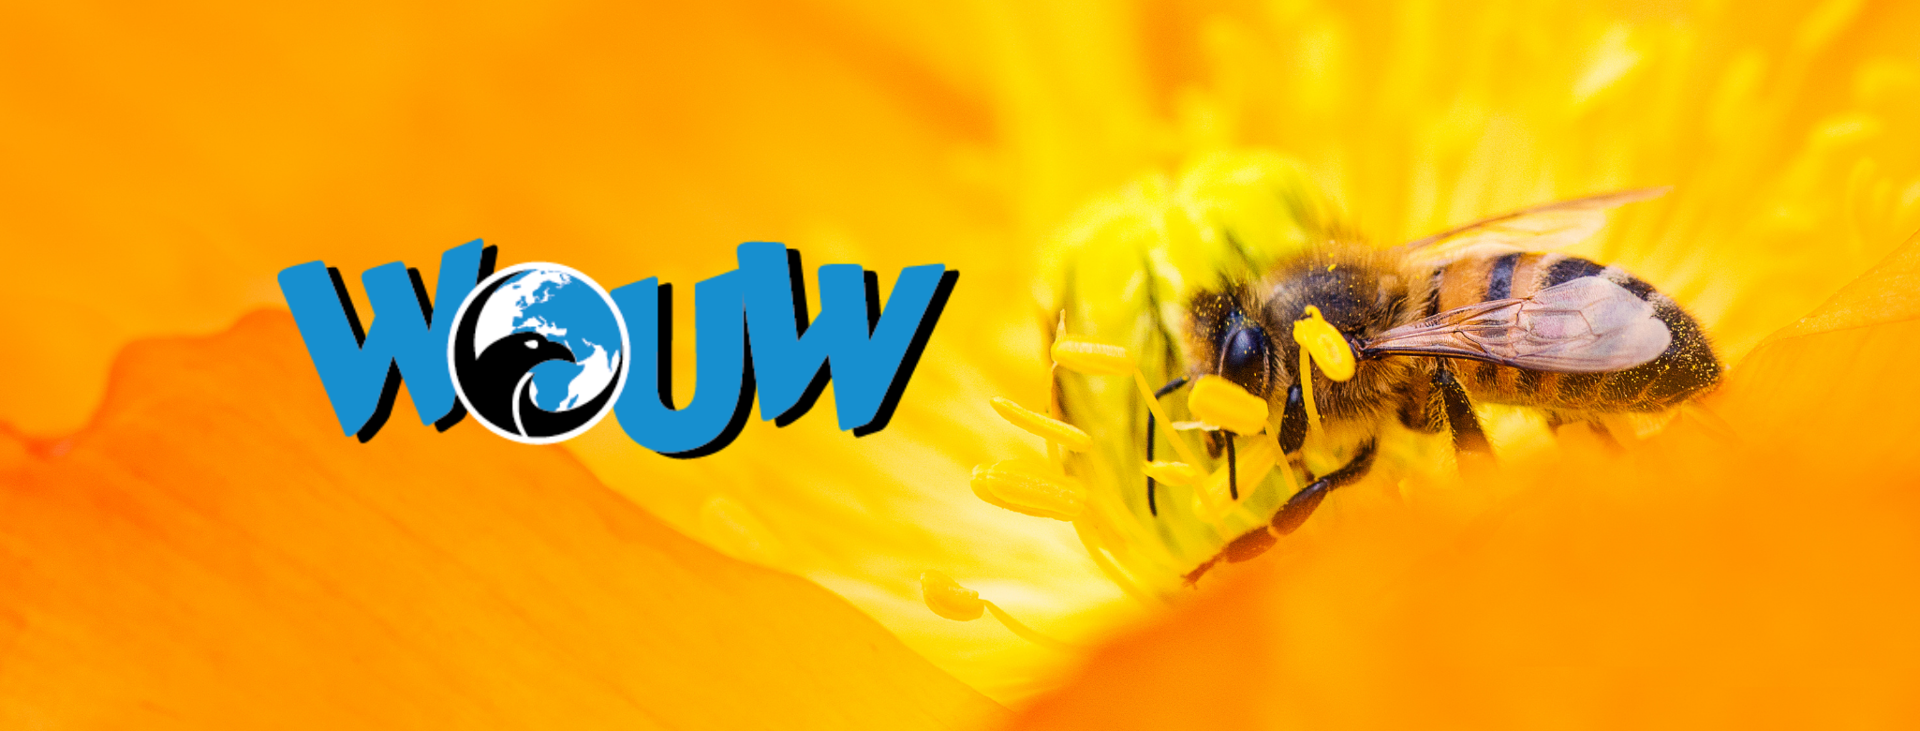 Wouw | Belang van bijen